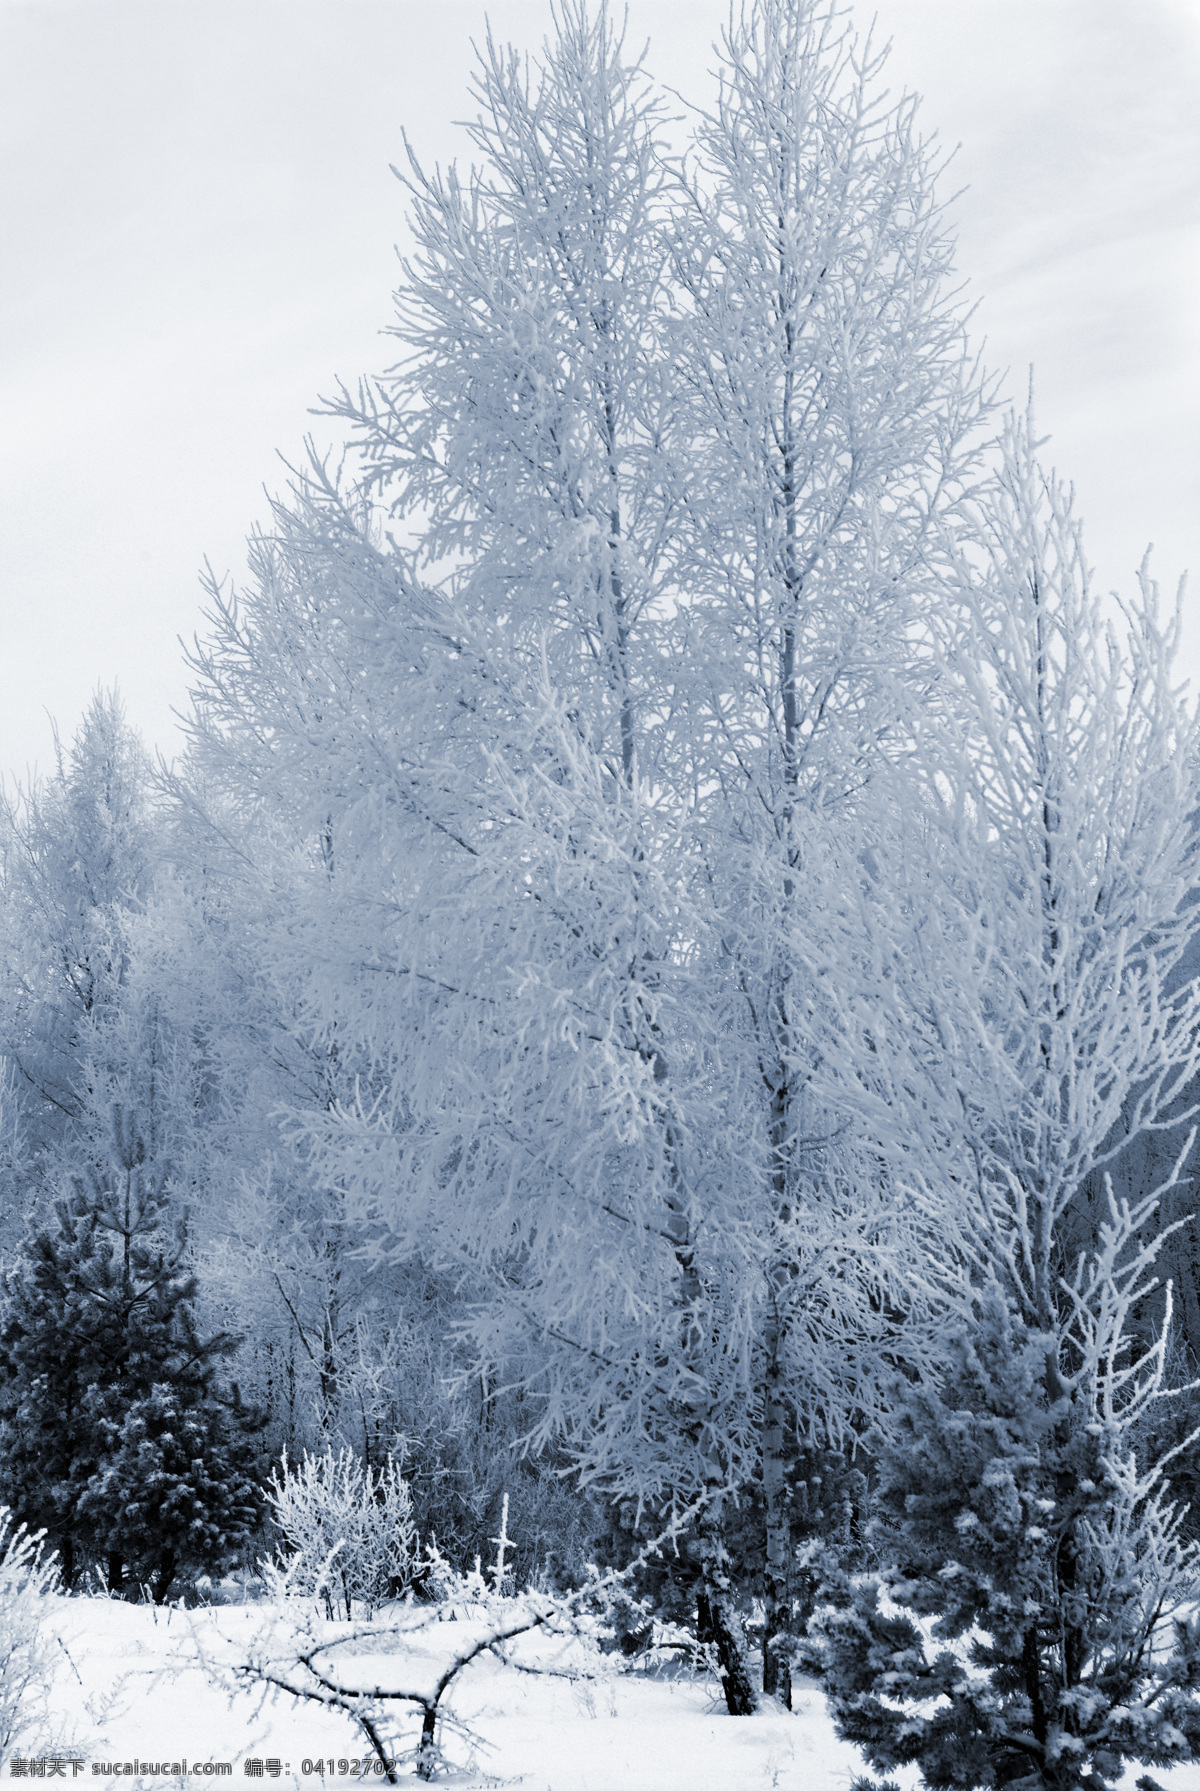 冬季树木 冬季 冬天 雪景 美丽风景 景色 美景 积雪 雪花 雪地 森林 树木 自然风景 自然景观 白色